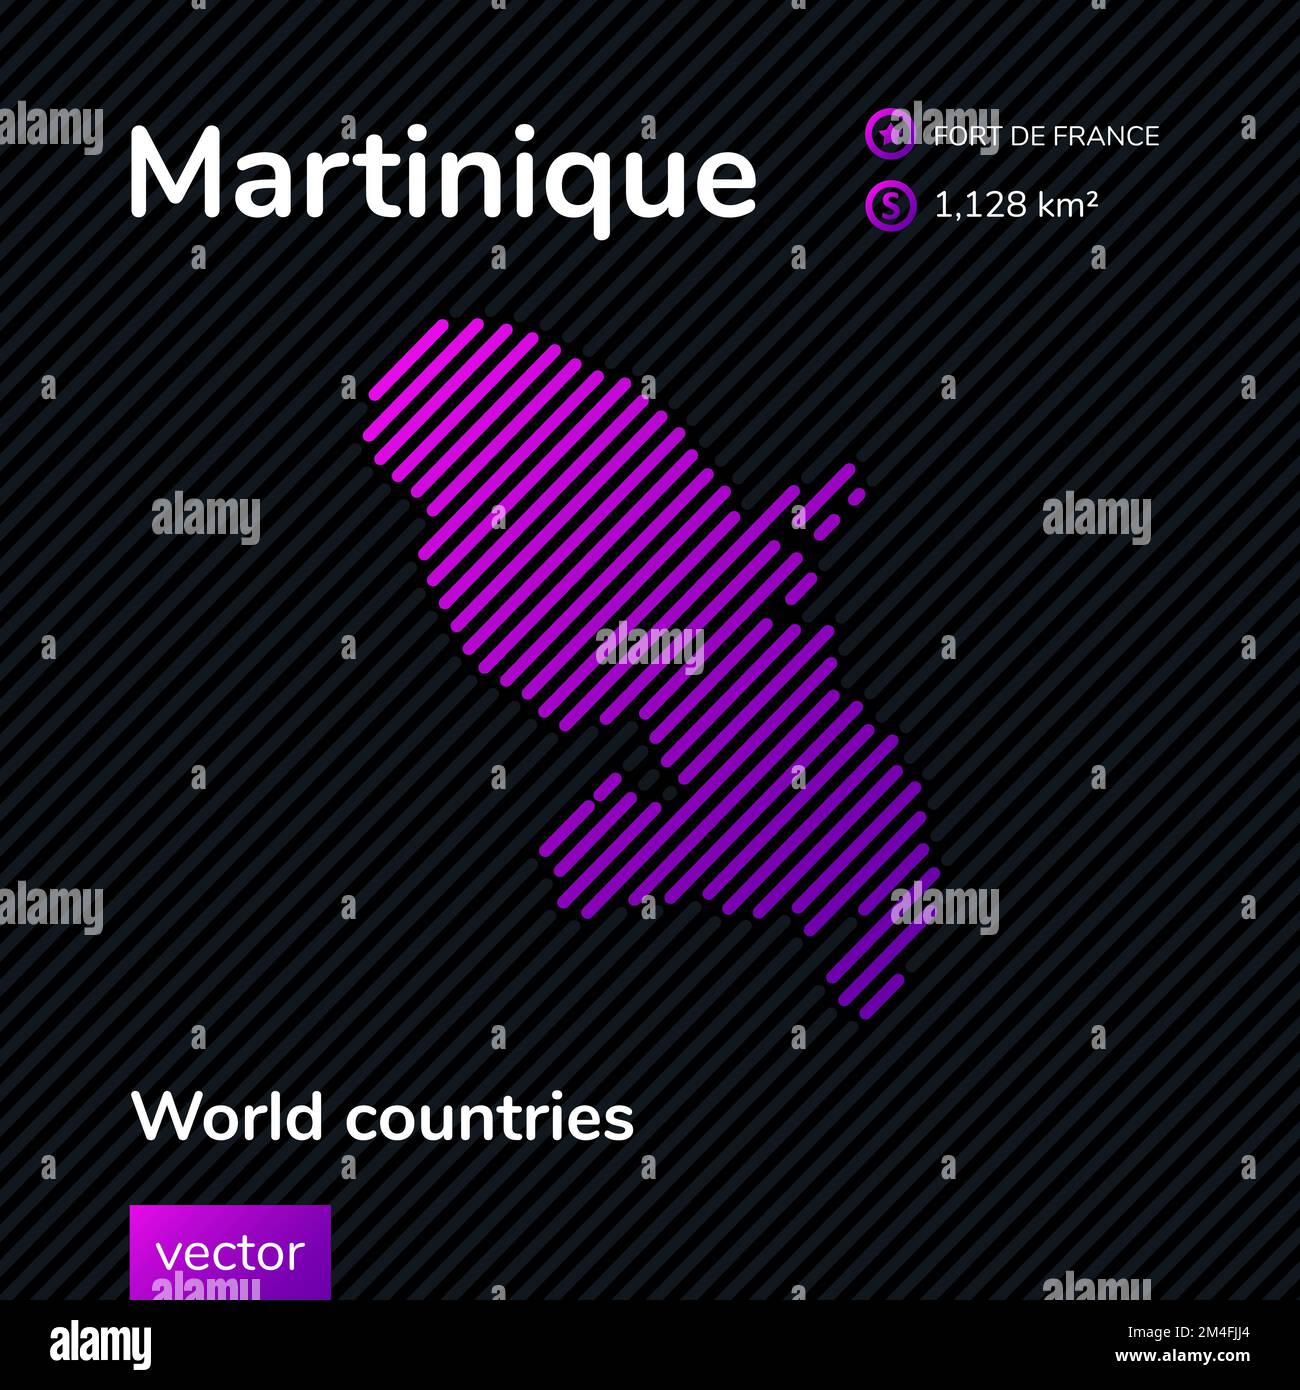 Carte vectorielle plate de la Martinique avec texture à rayures violettes, violettes, roses sur fond noir. Bannière éducative, affiche sur la Martinique Illustration de Vecteur